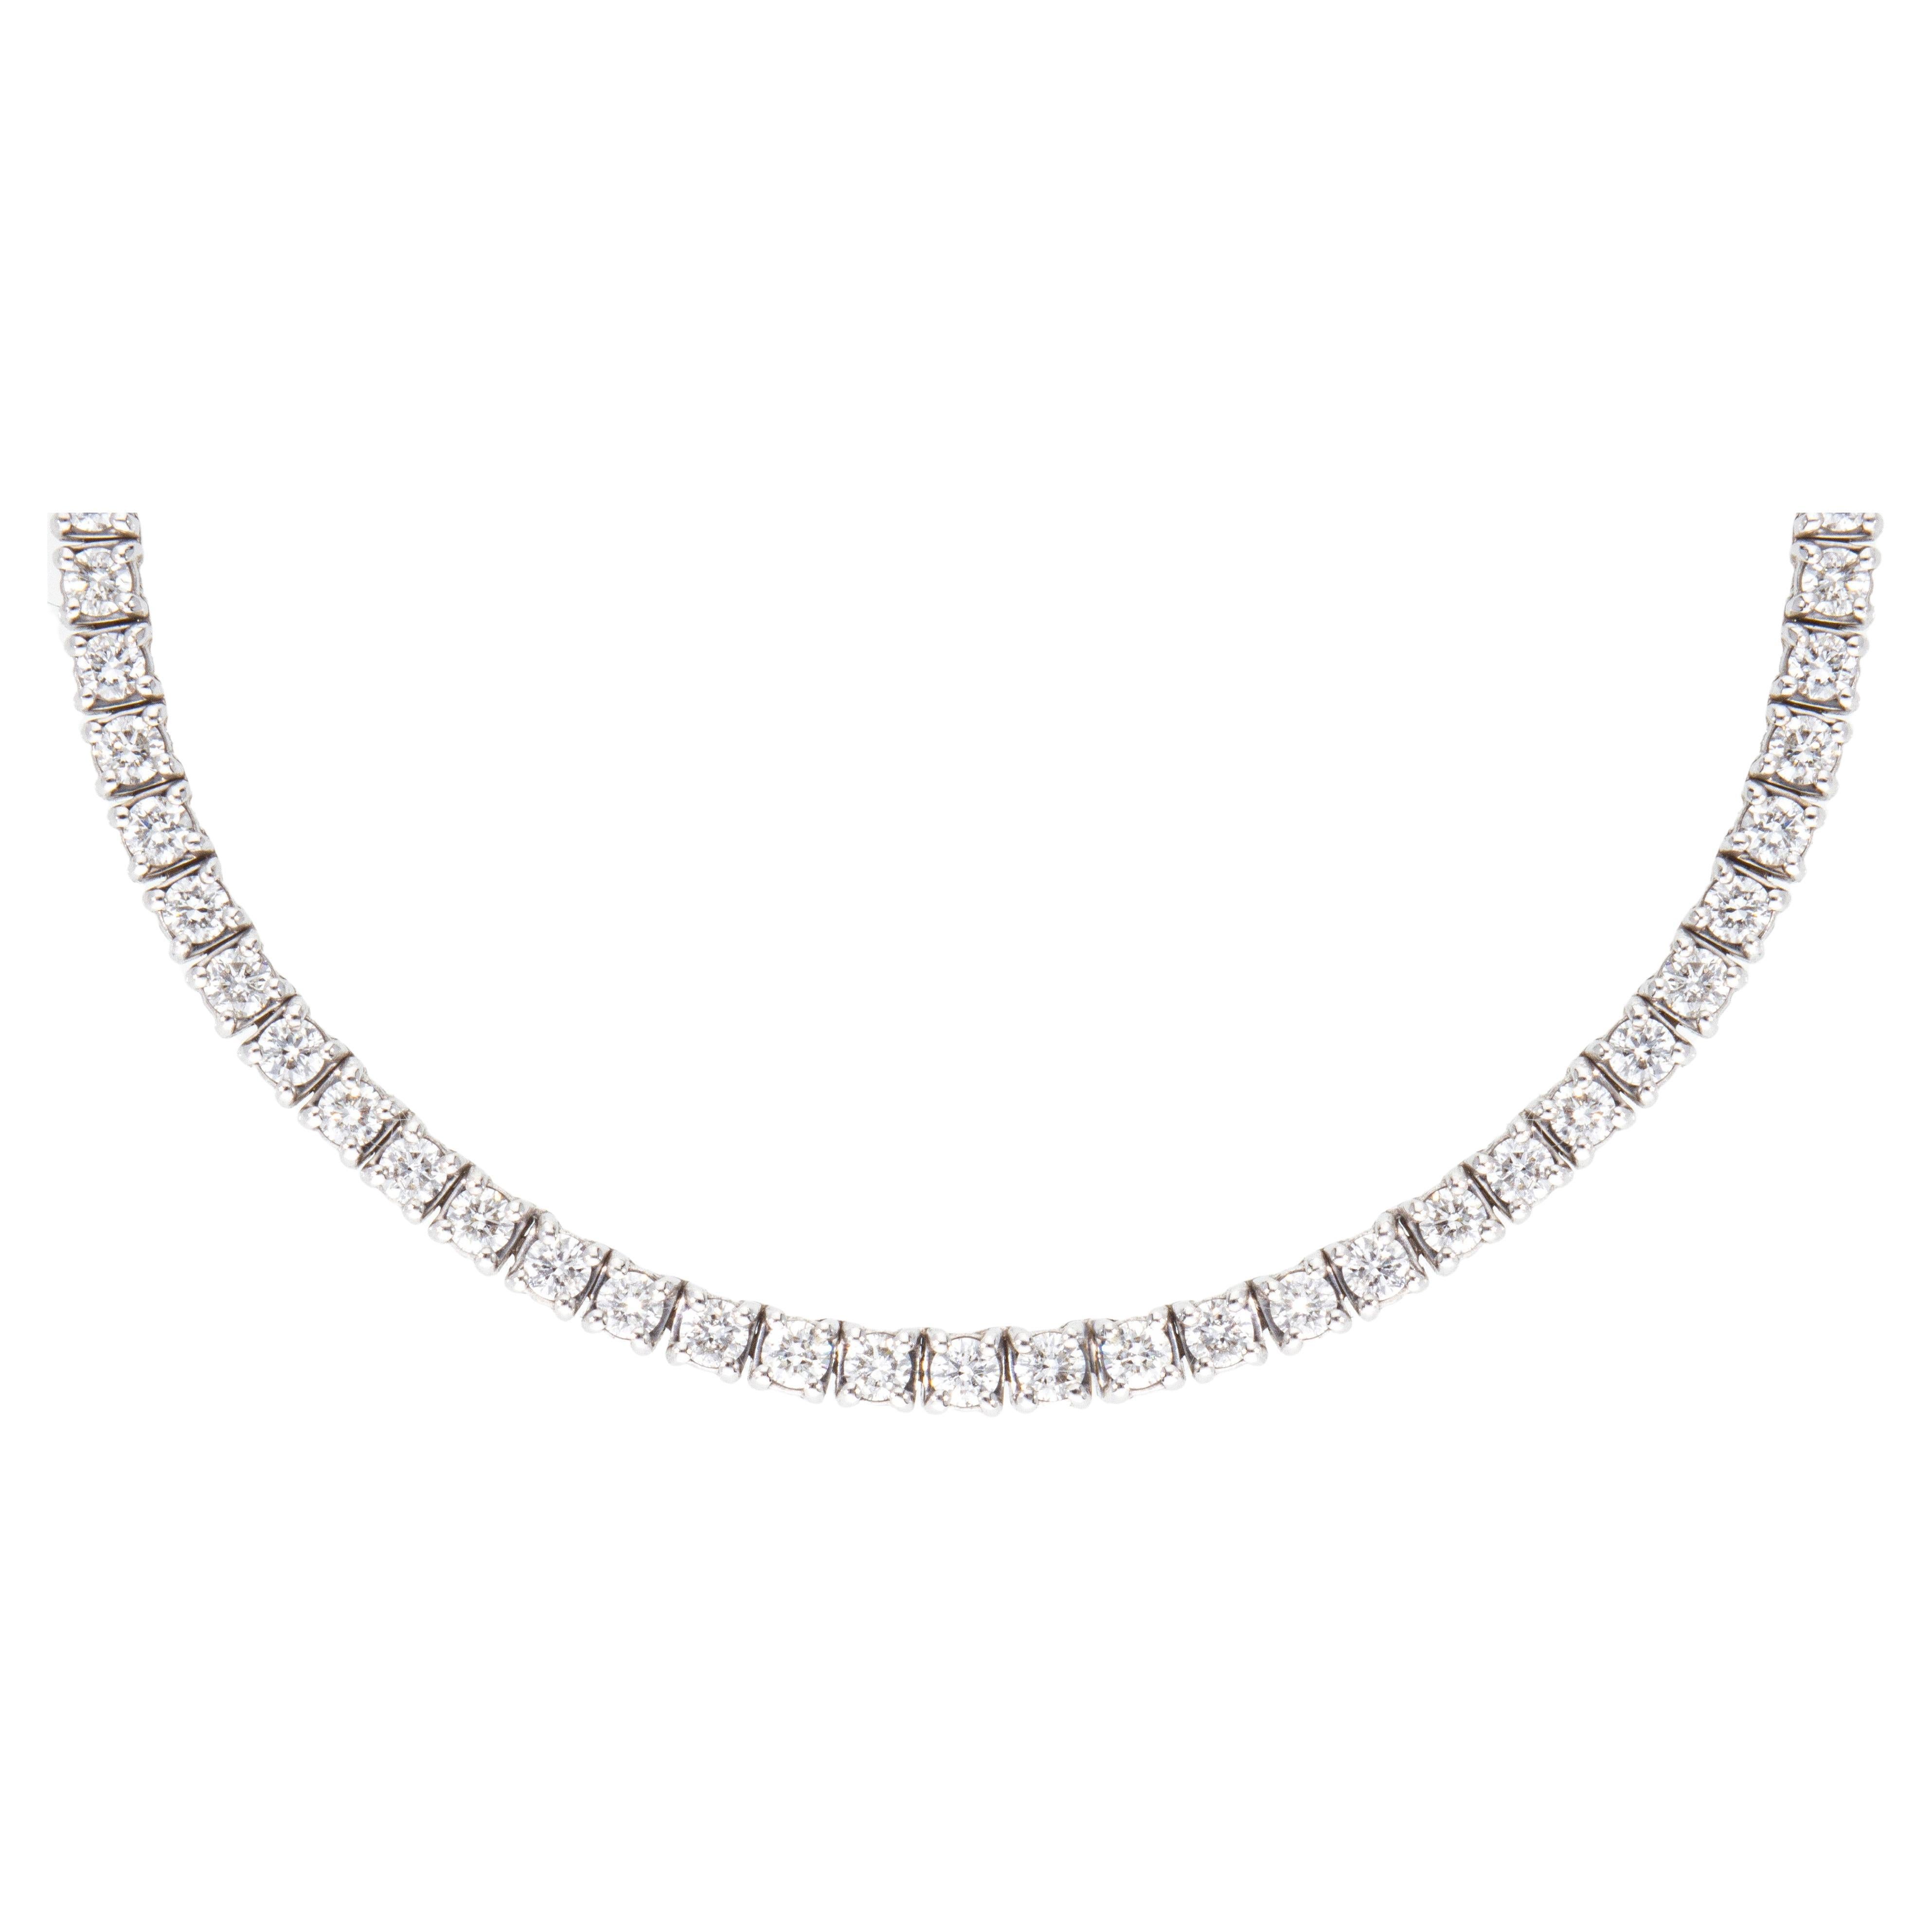 Halskette mit 154 Diamanten im Brillantschliff, Gesamtkaratgewicht ca. 4,41